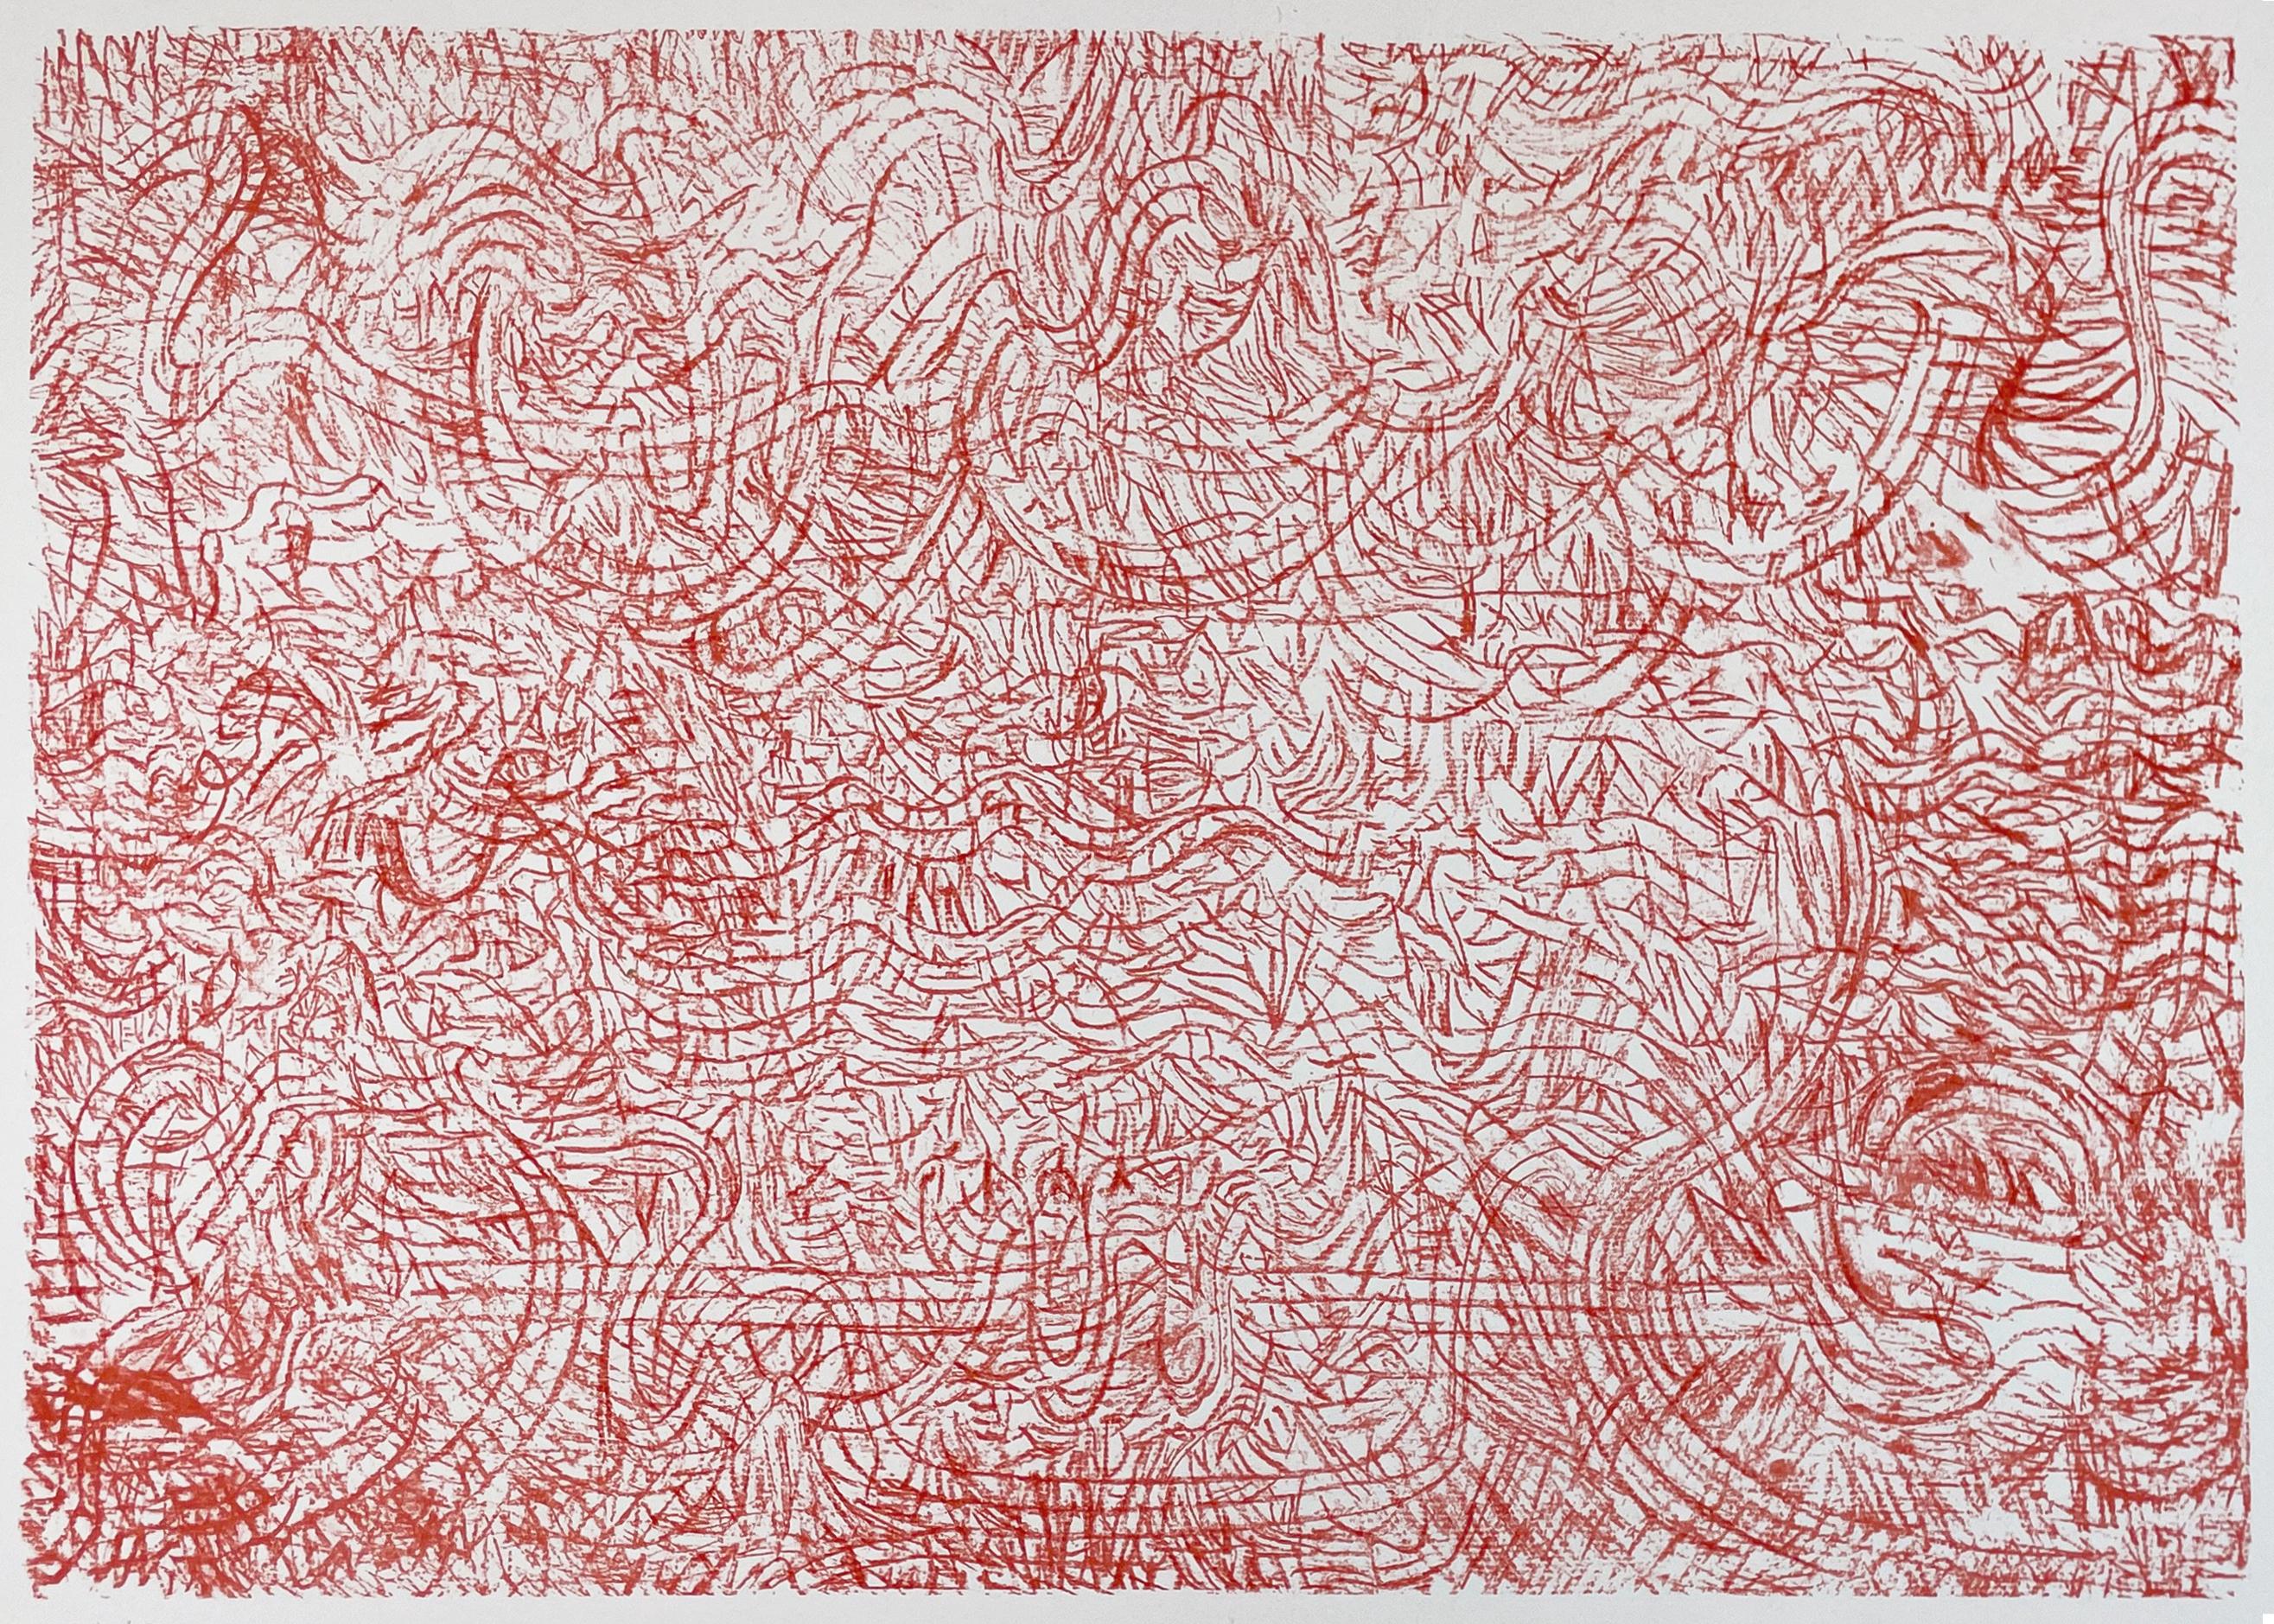 Eine ausdrucksstarke, jubelnde abstrakte Komposition in leuchtendem Scharlachrot, bei der Mark Tobeys von der Kalligrafie inspirierte Markierungen eine strukturierte Matrix aus Linien bilden, die zu winken und zu wirbeln scheint.

Mark Tobey,